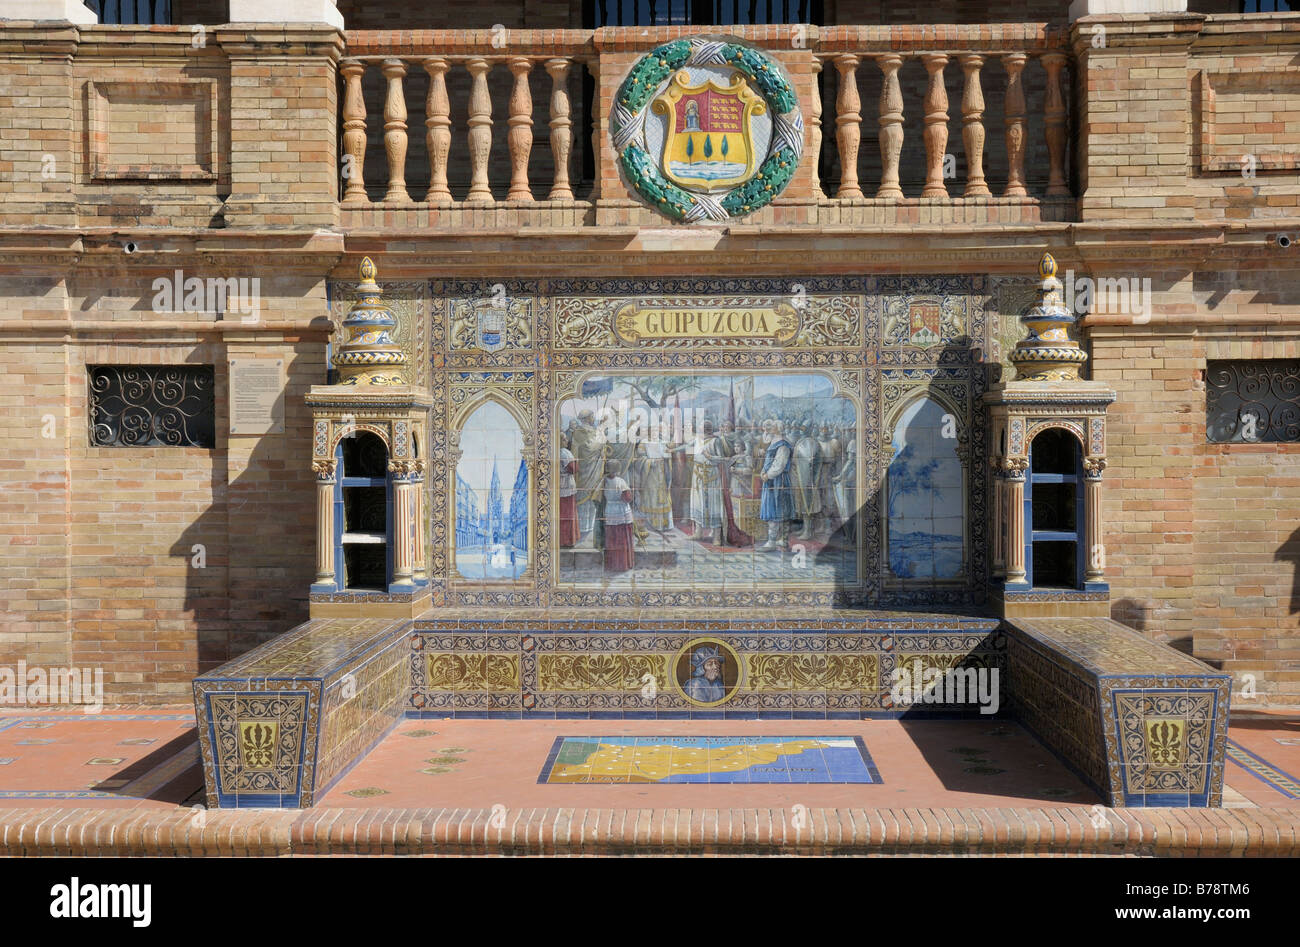 Azulejo, mosaico en las baldosas, de Guipúzcoa, Plaza de España, en Andalucía, España, Europa Foto de stock